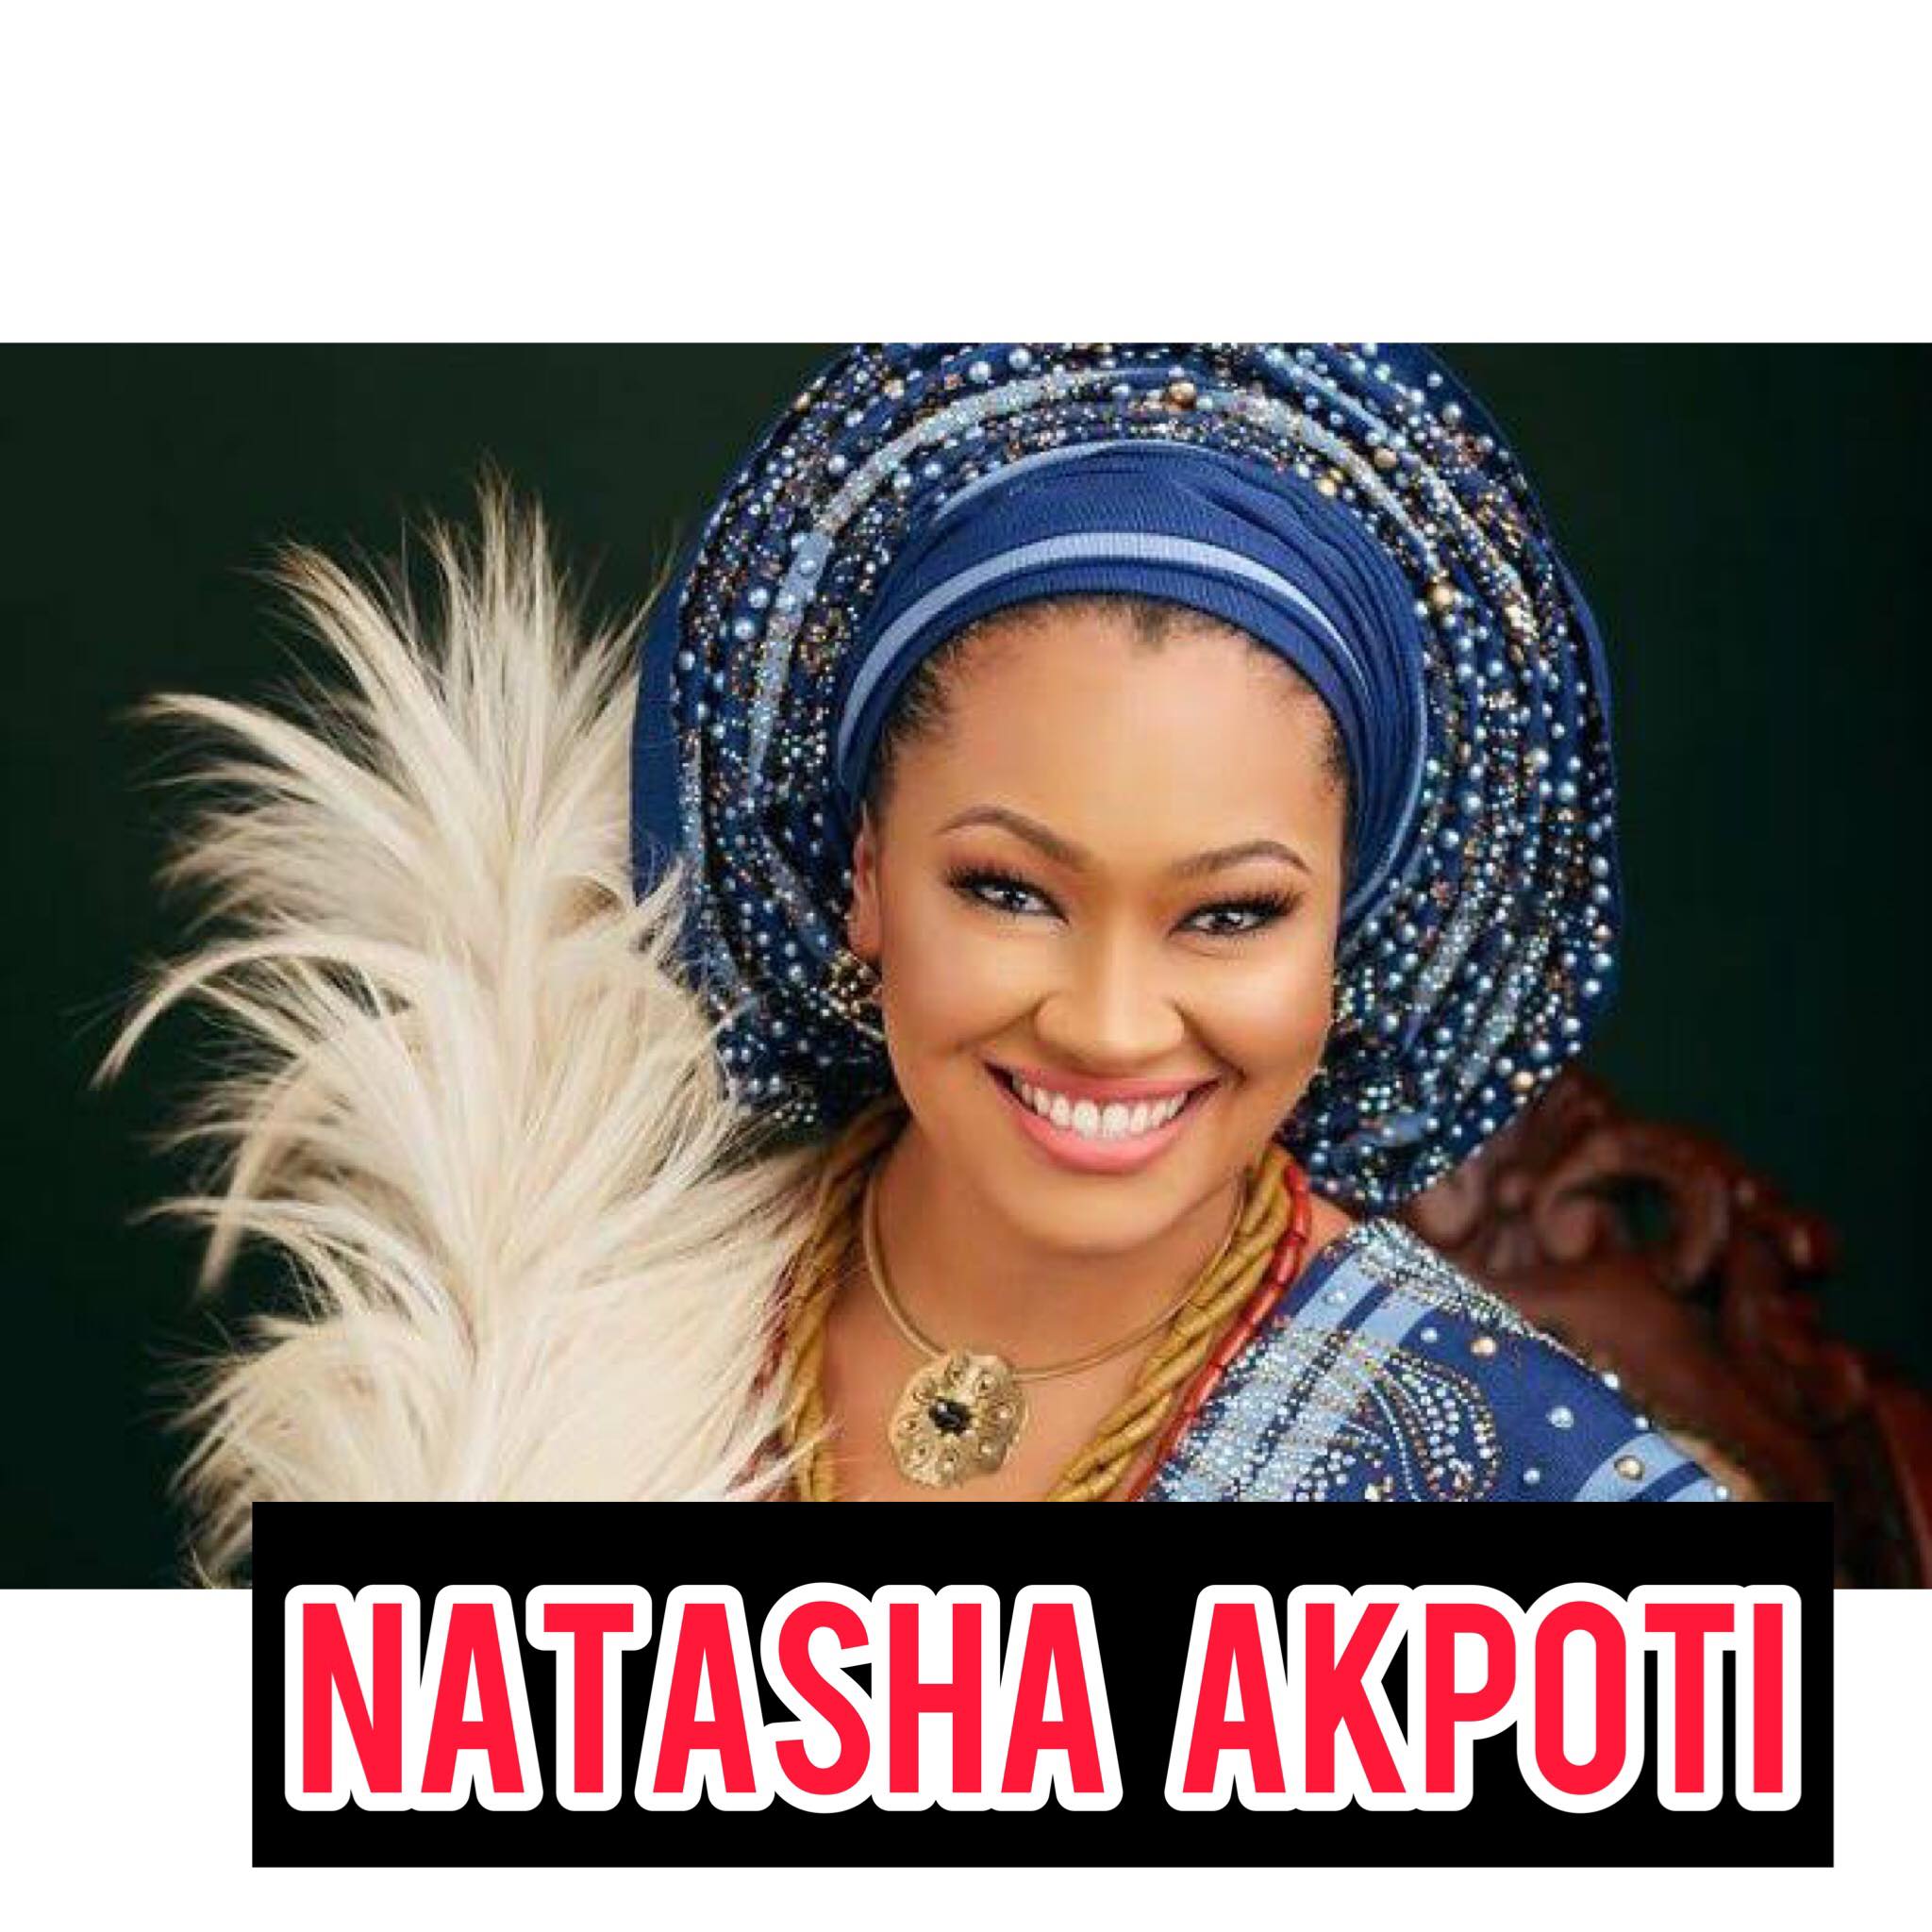 Natasha Akpoti Biography